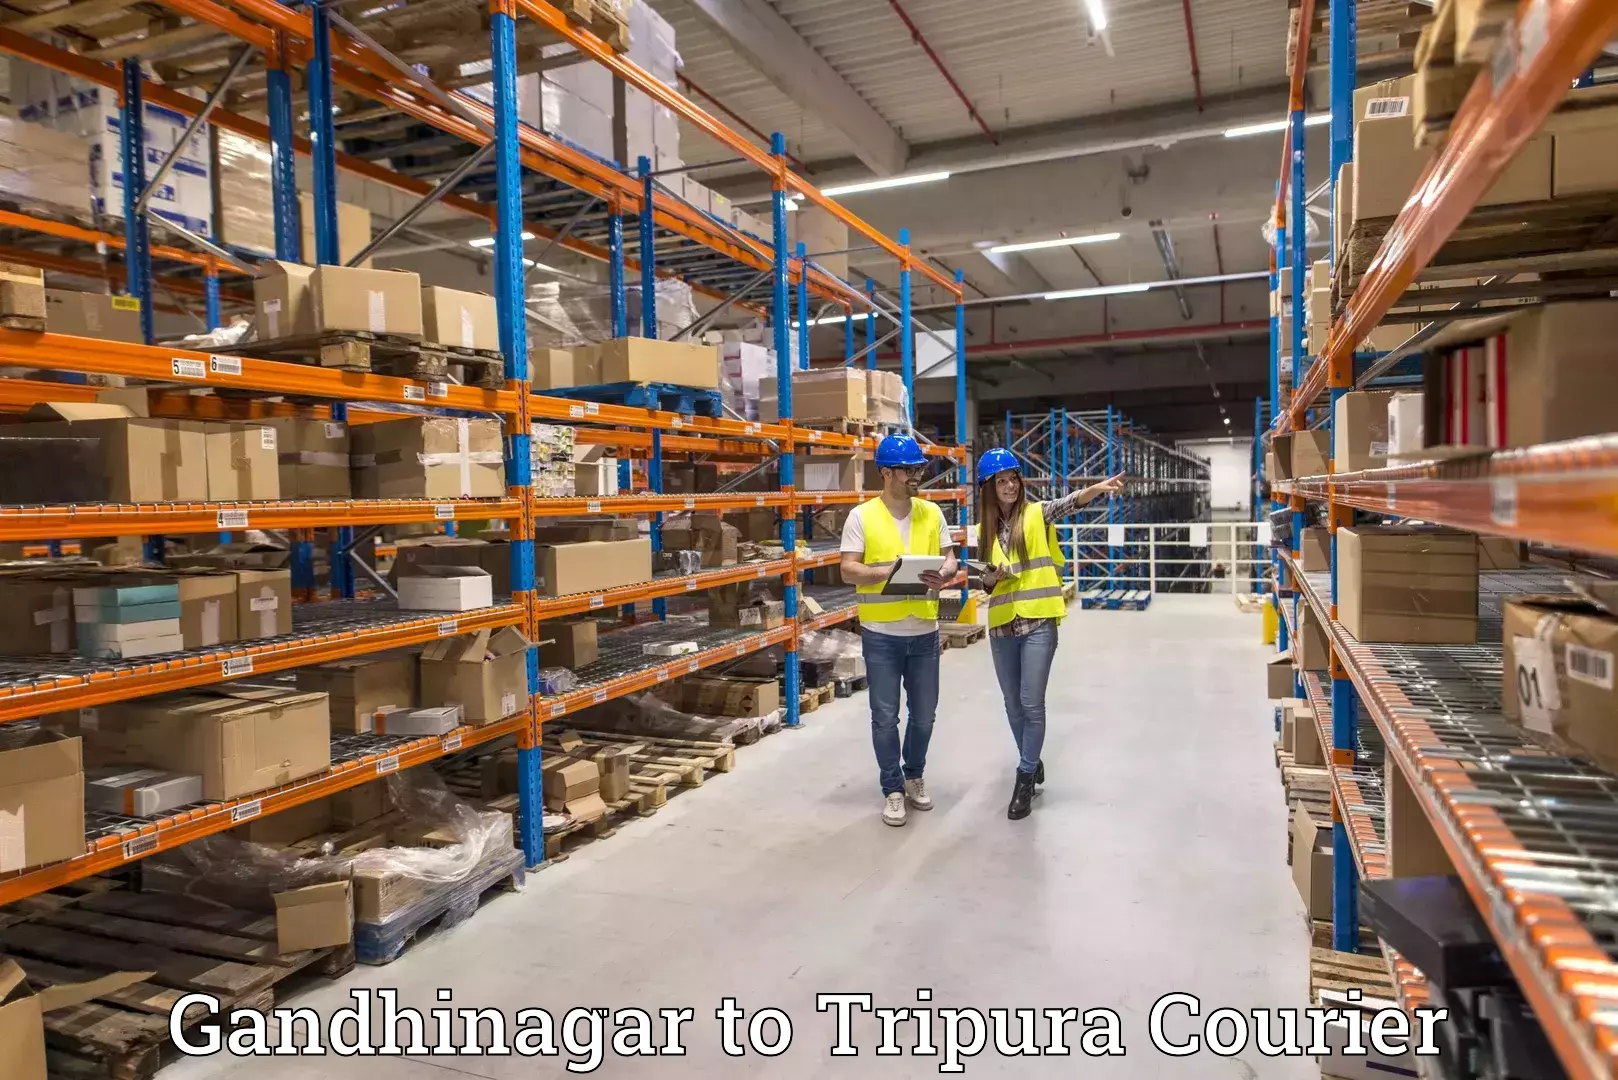 Cross-border shipping Gandhinagar to Kailashahar